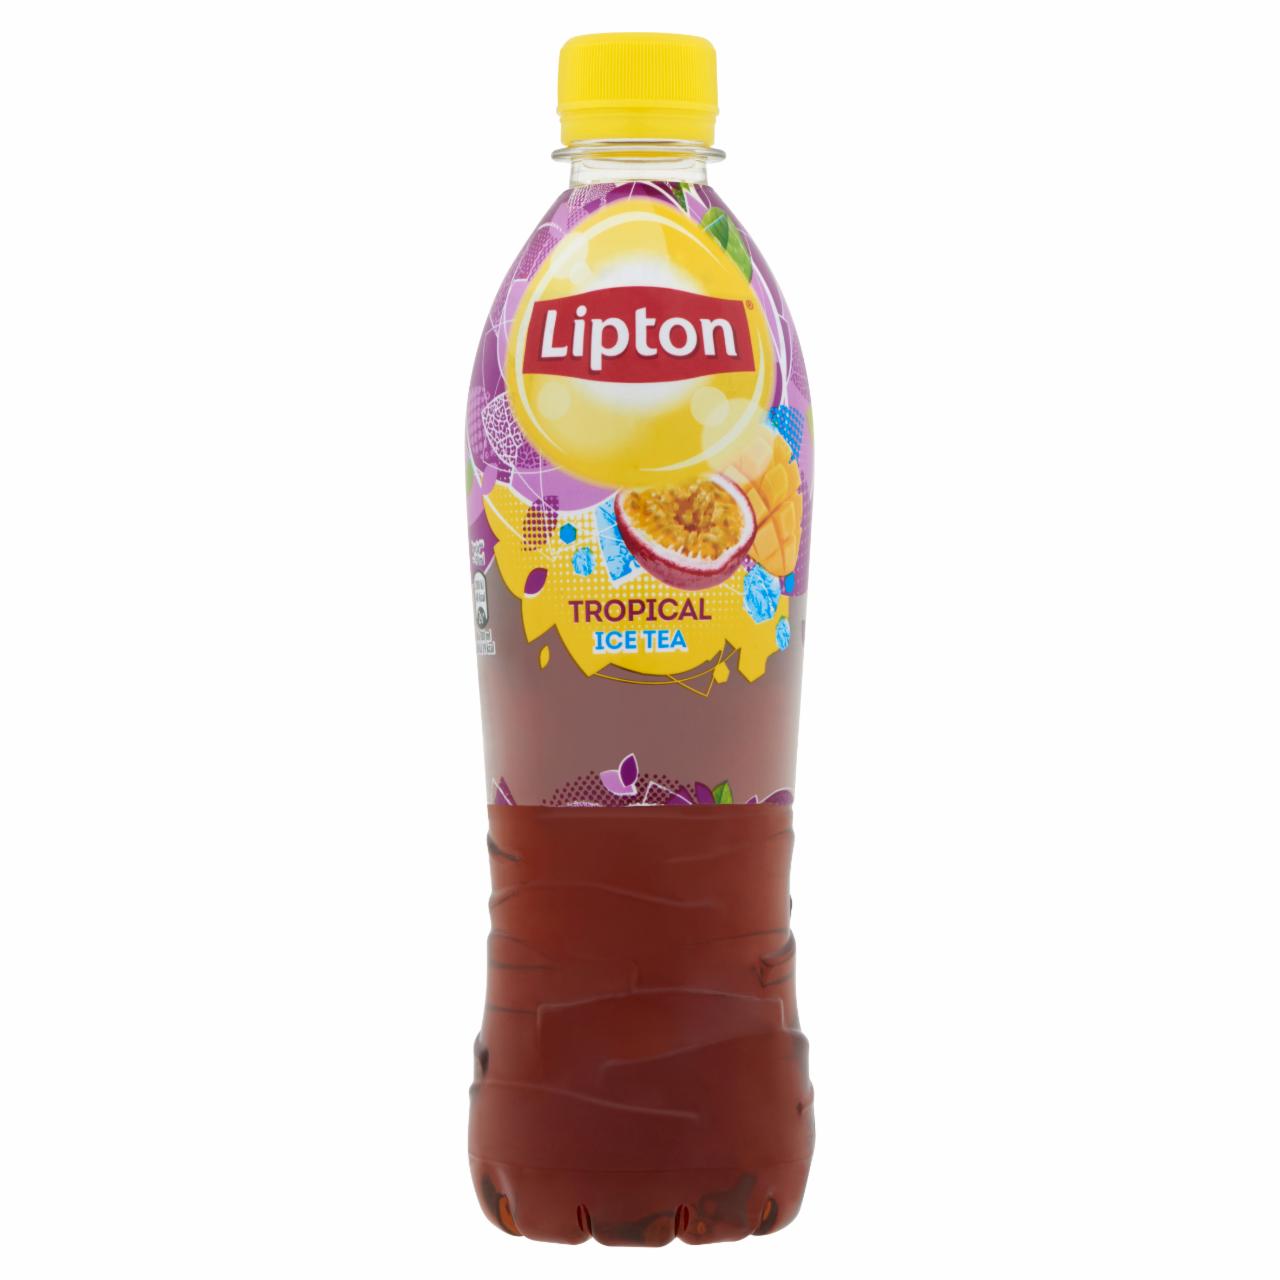 Képek - Lipton Ice Tea Tropical, tropical ízű csökkentett energiatartalmú 0,5 l